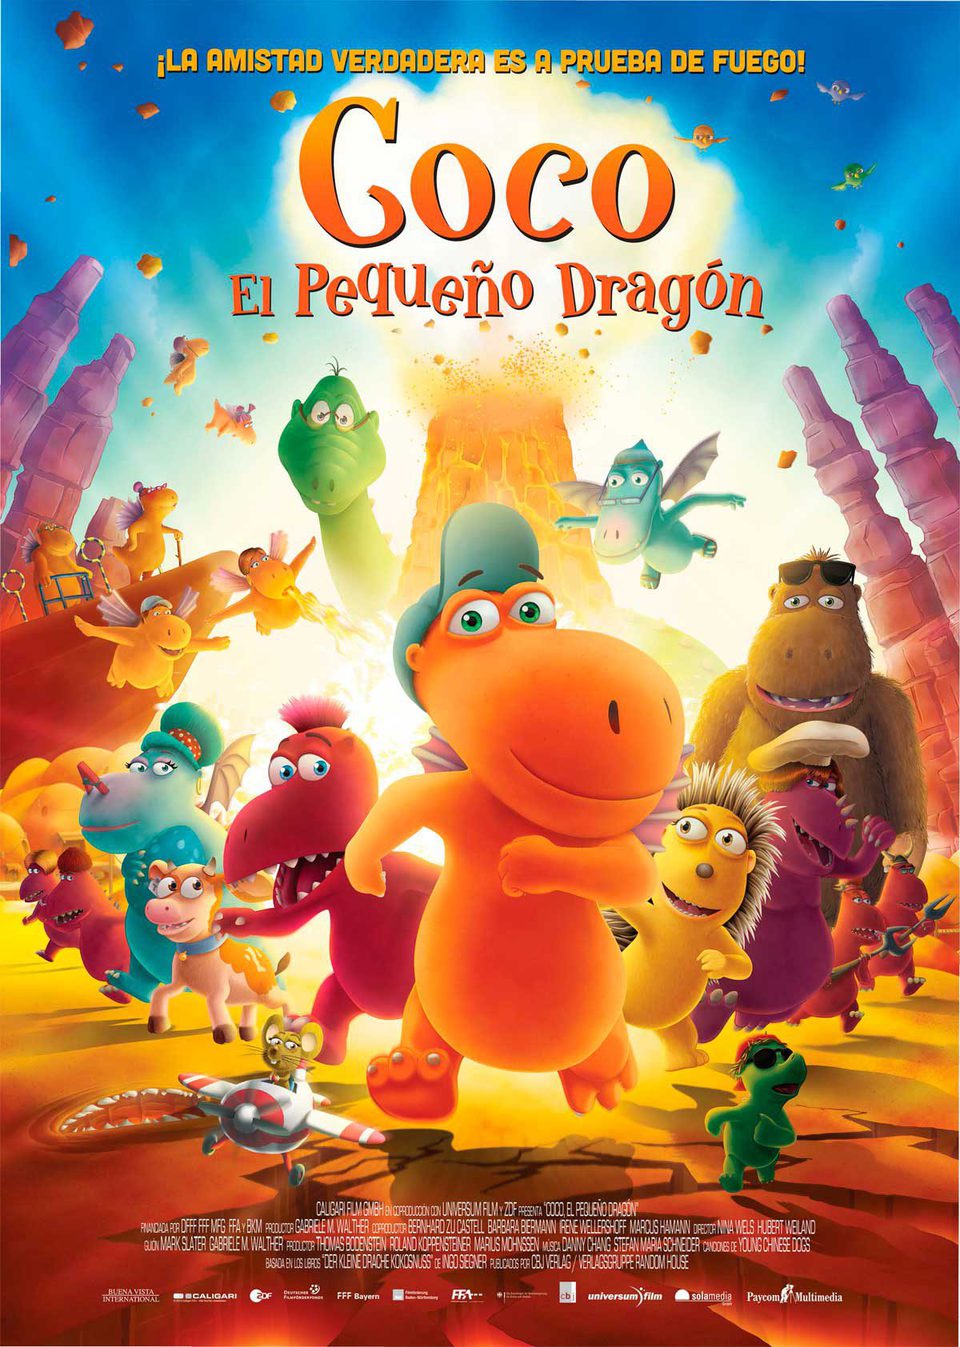 Cartel de Coco, el pequeño dragón - Póster España